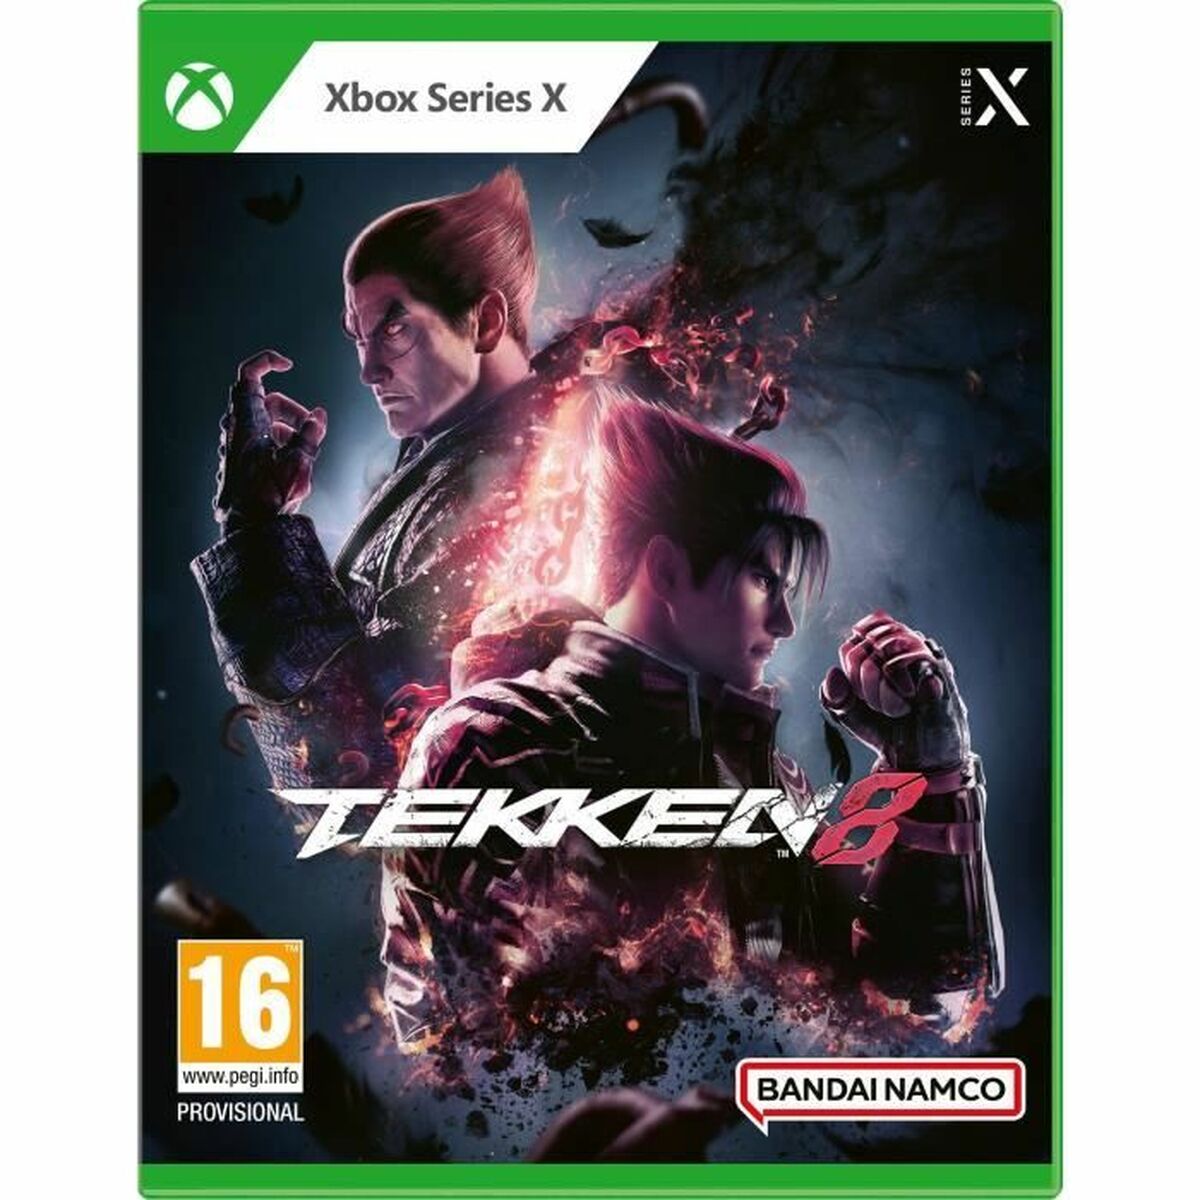 Jeu vidéo Xbox Series X Bandai Namco Tekken 8 (FR)